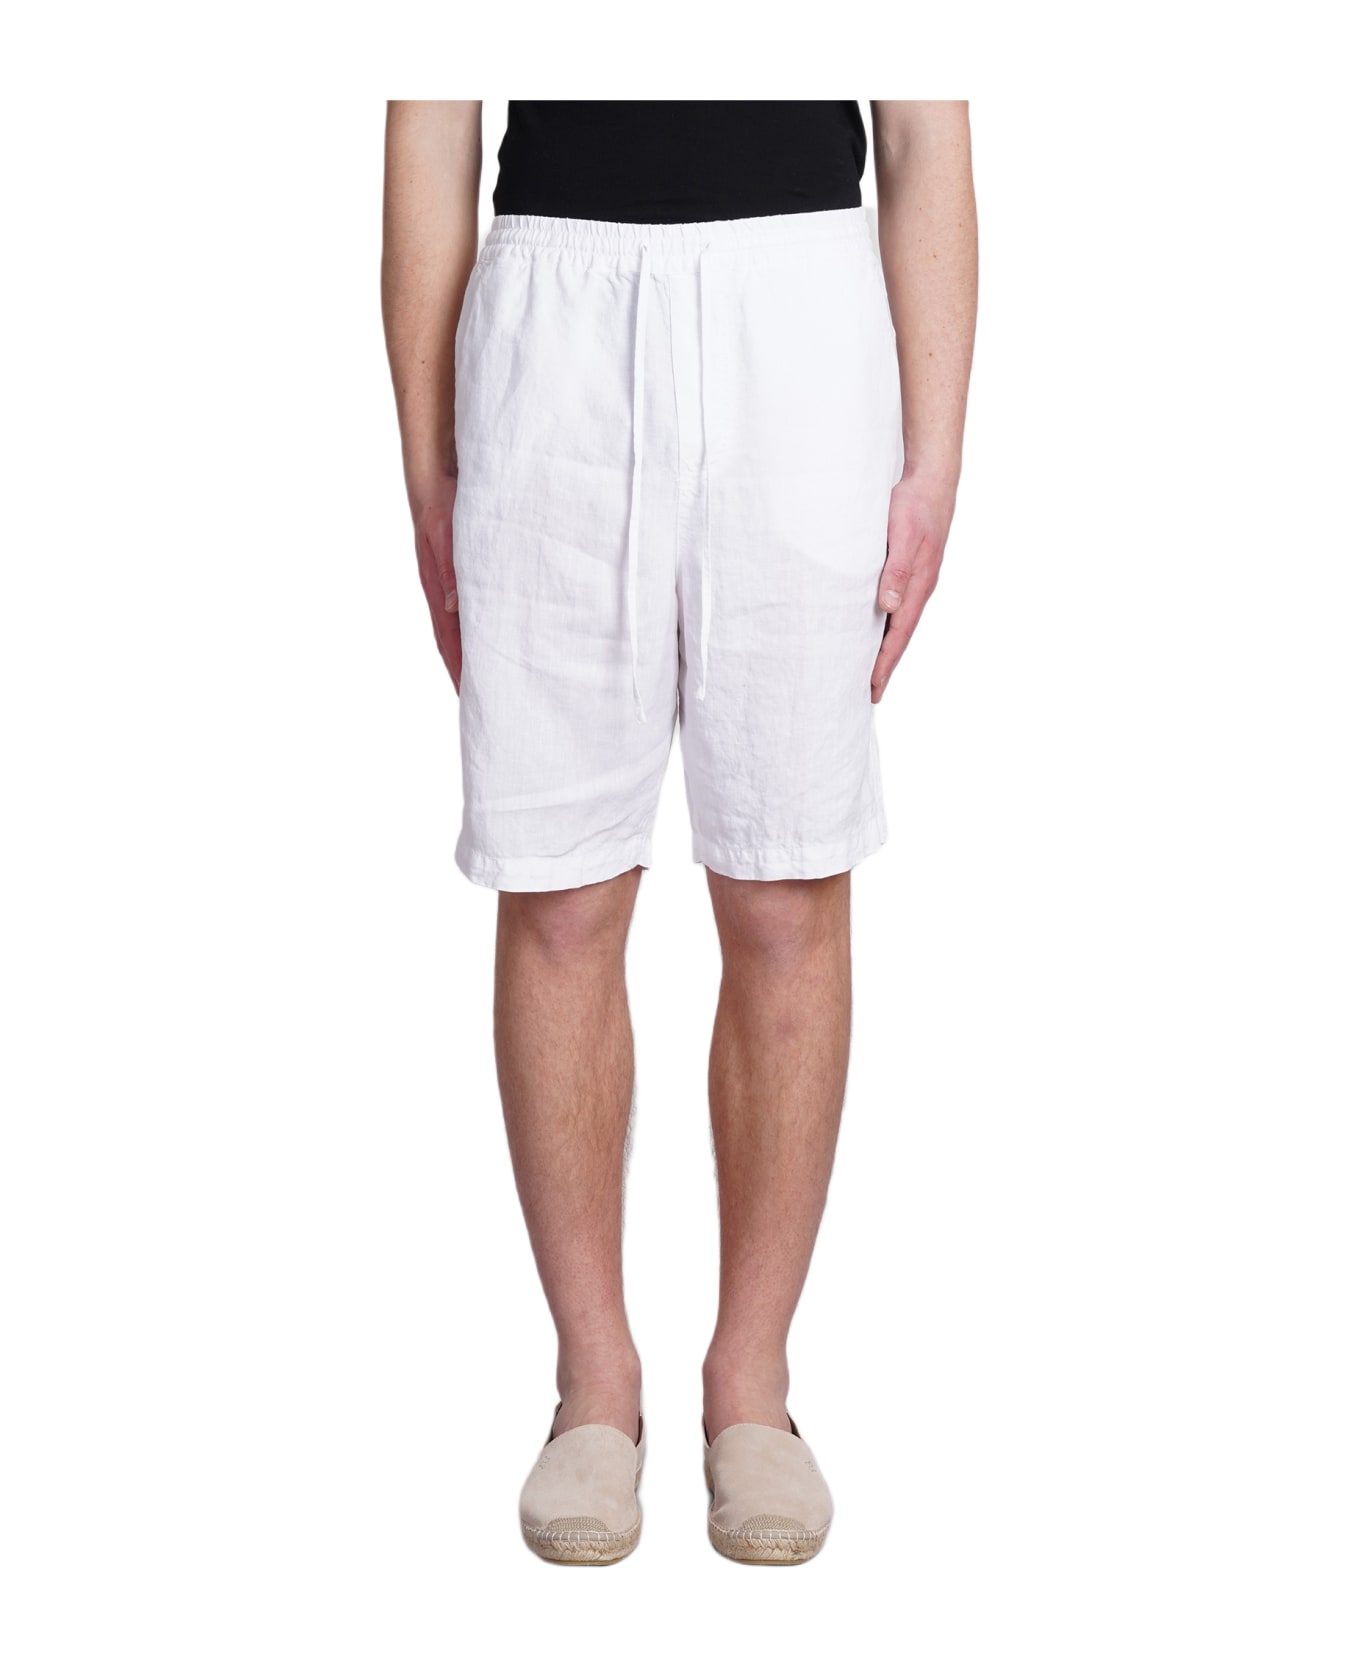 120% Lino Shorts In White Linen - white